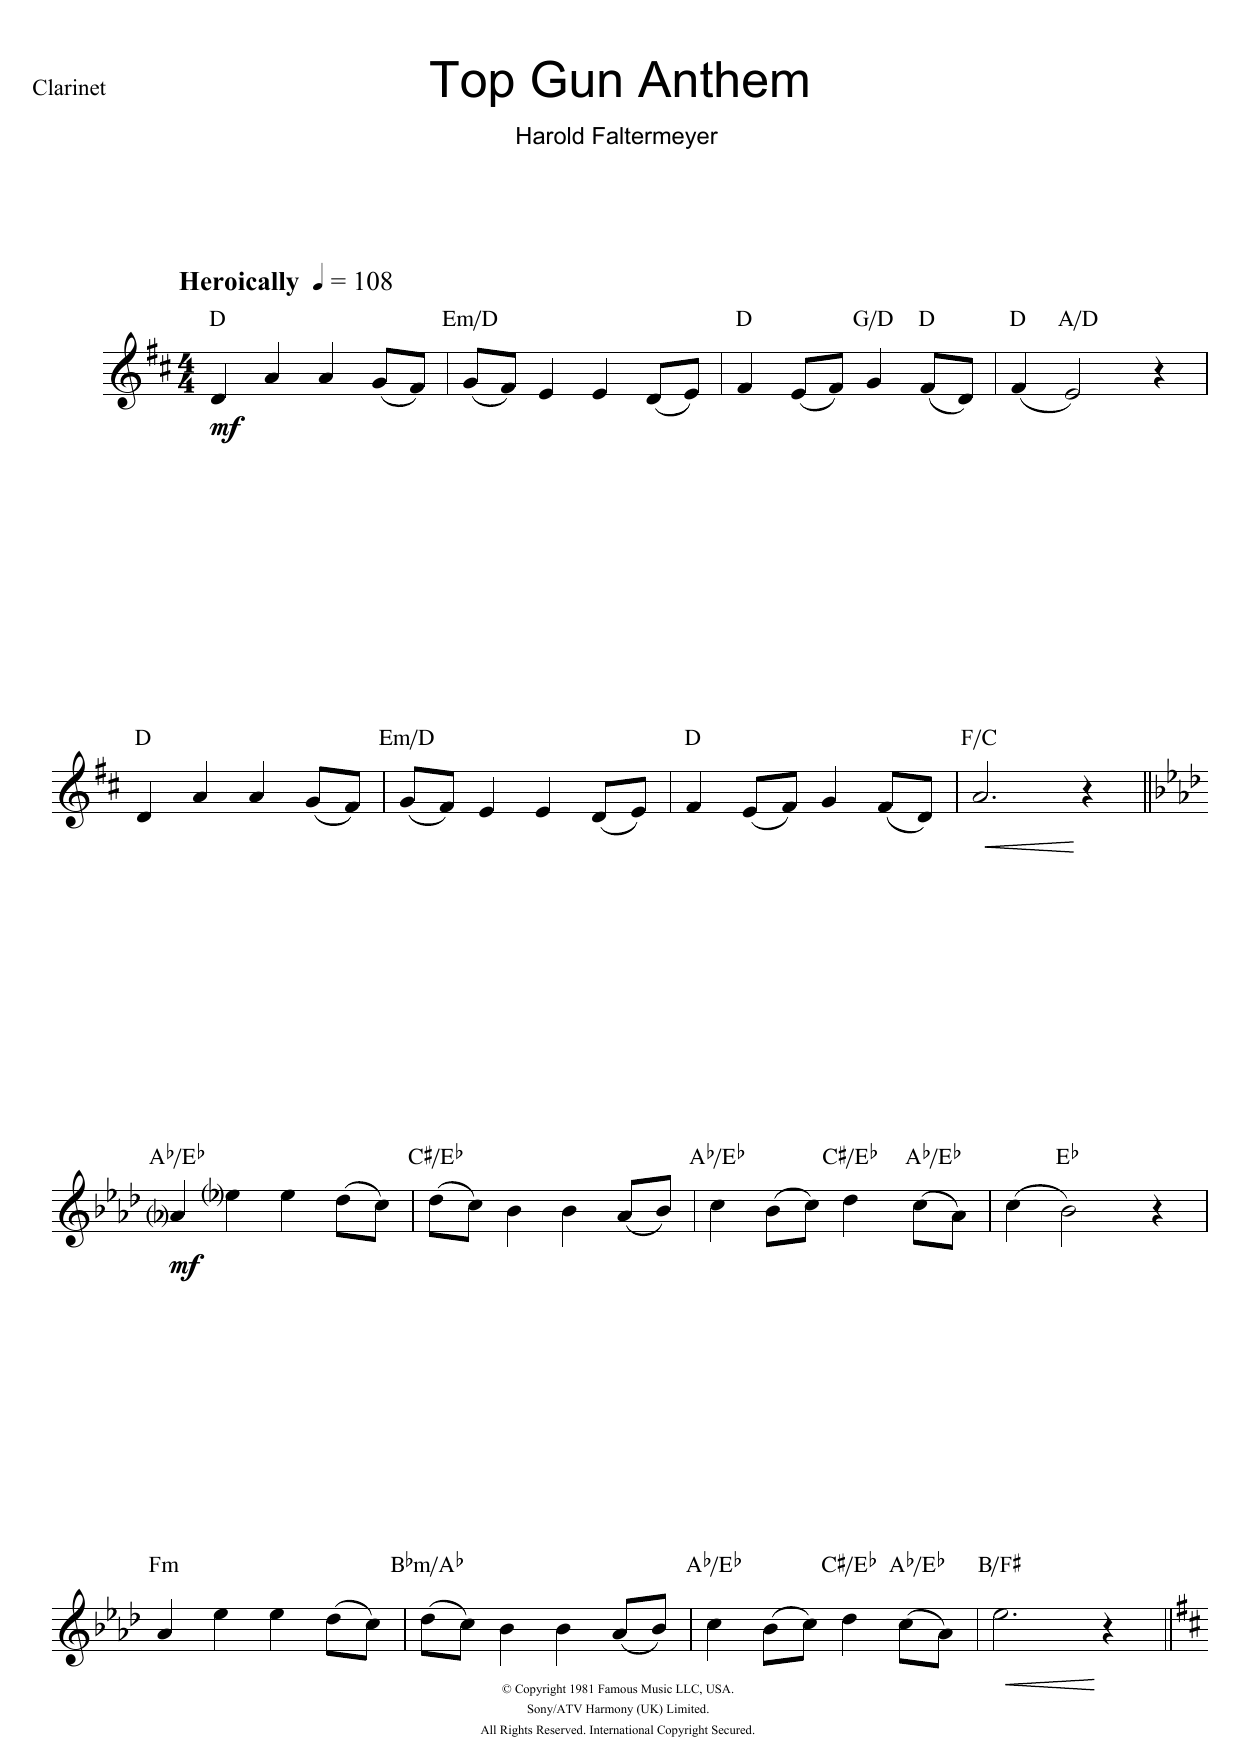 Harold Faltermeyer Top Gun (Anthem) Sheet Music Notes & Chords for Clarinet - Download or Print PDF